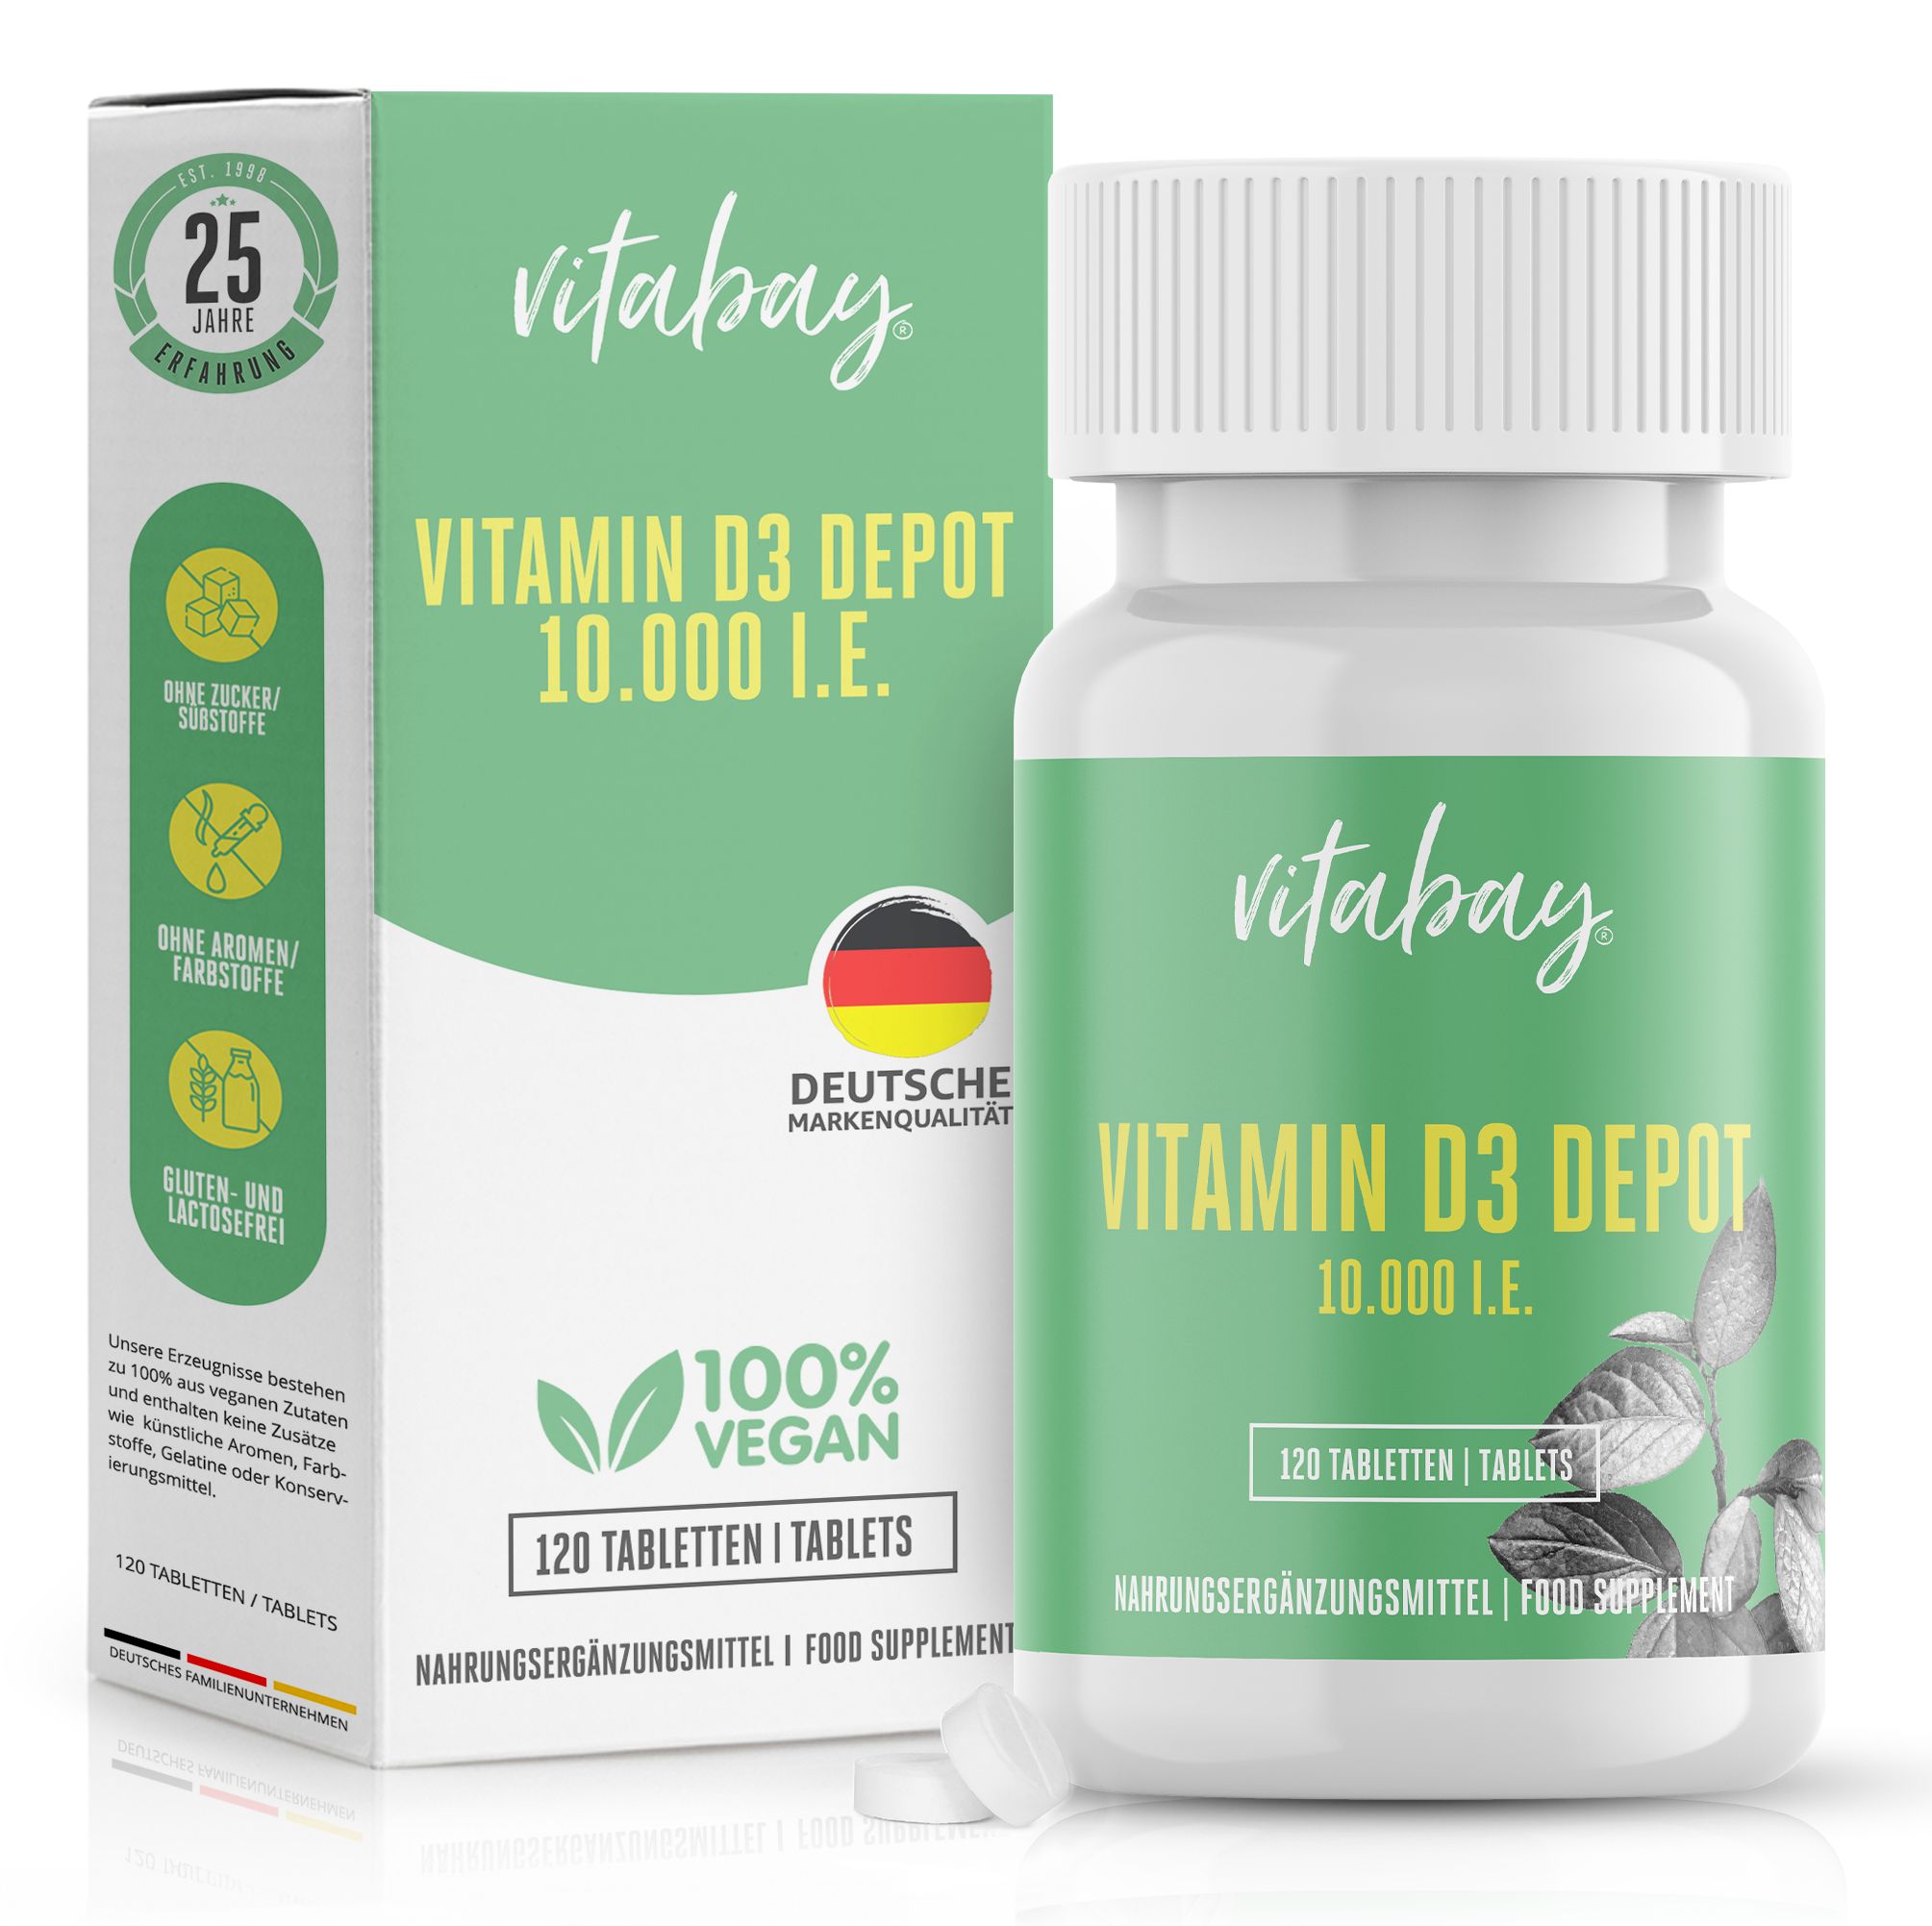 Vitabay Vitamin D3 Depot 10000 I.e.